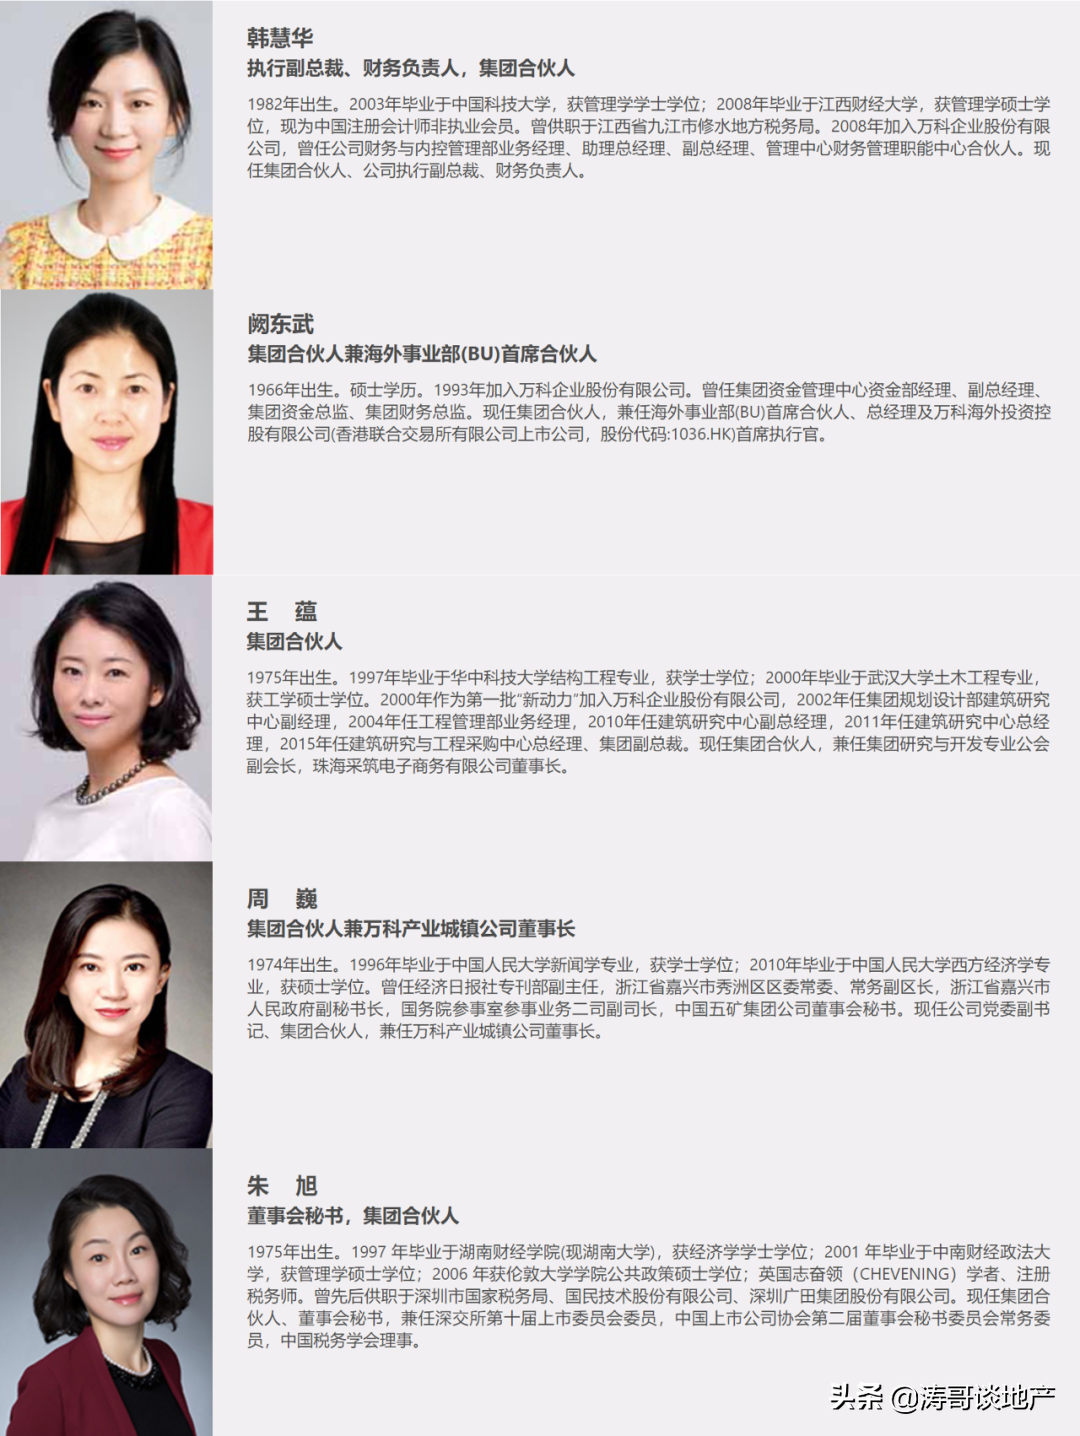 汕头龙光地产招聘(给地产女性的职业发展建议)-郑州富士康最新招聘信息